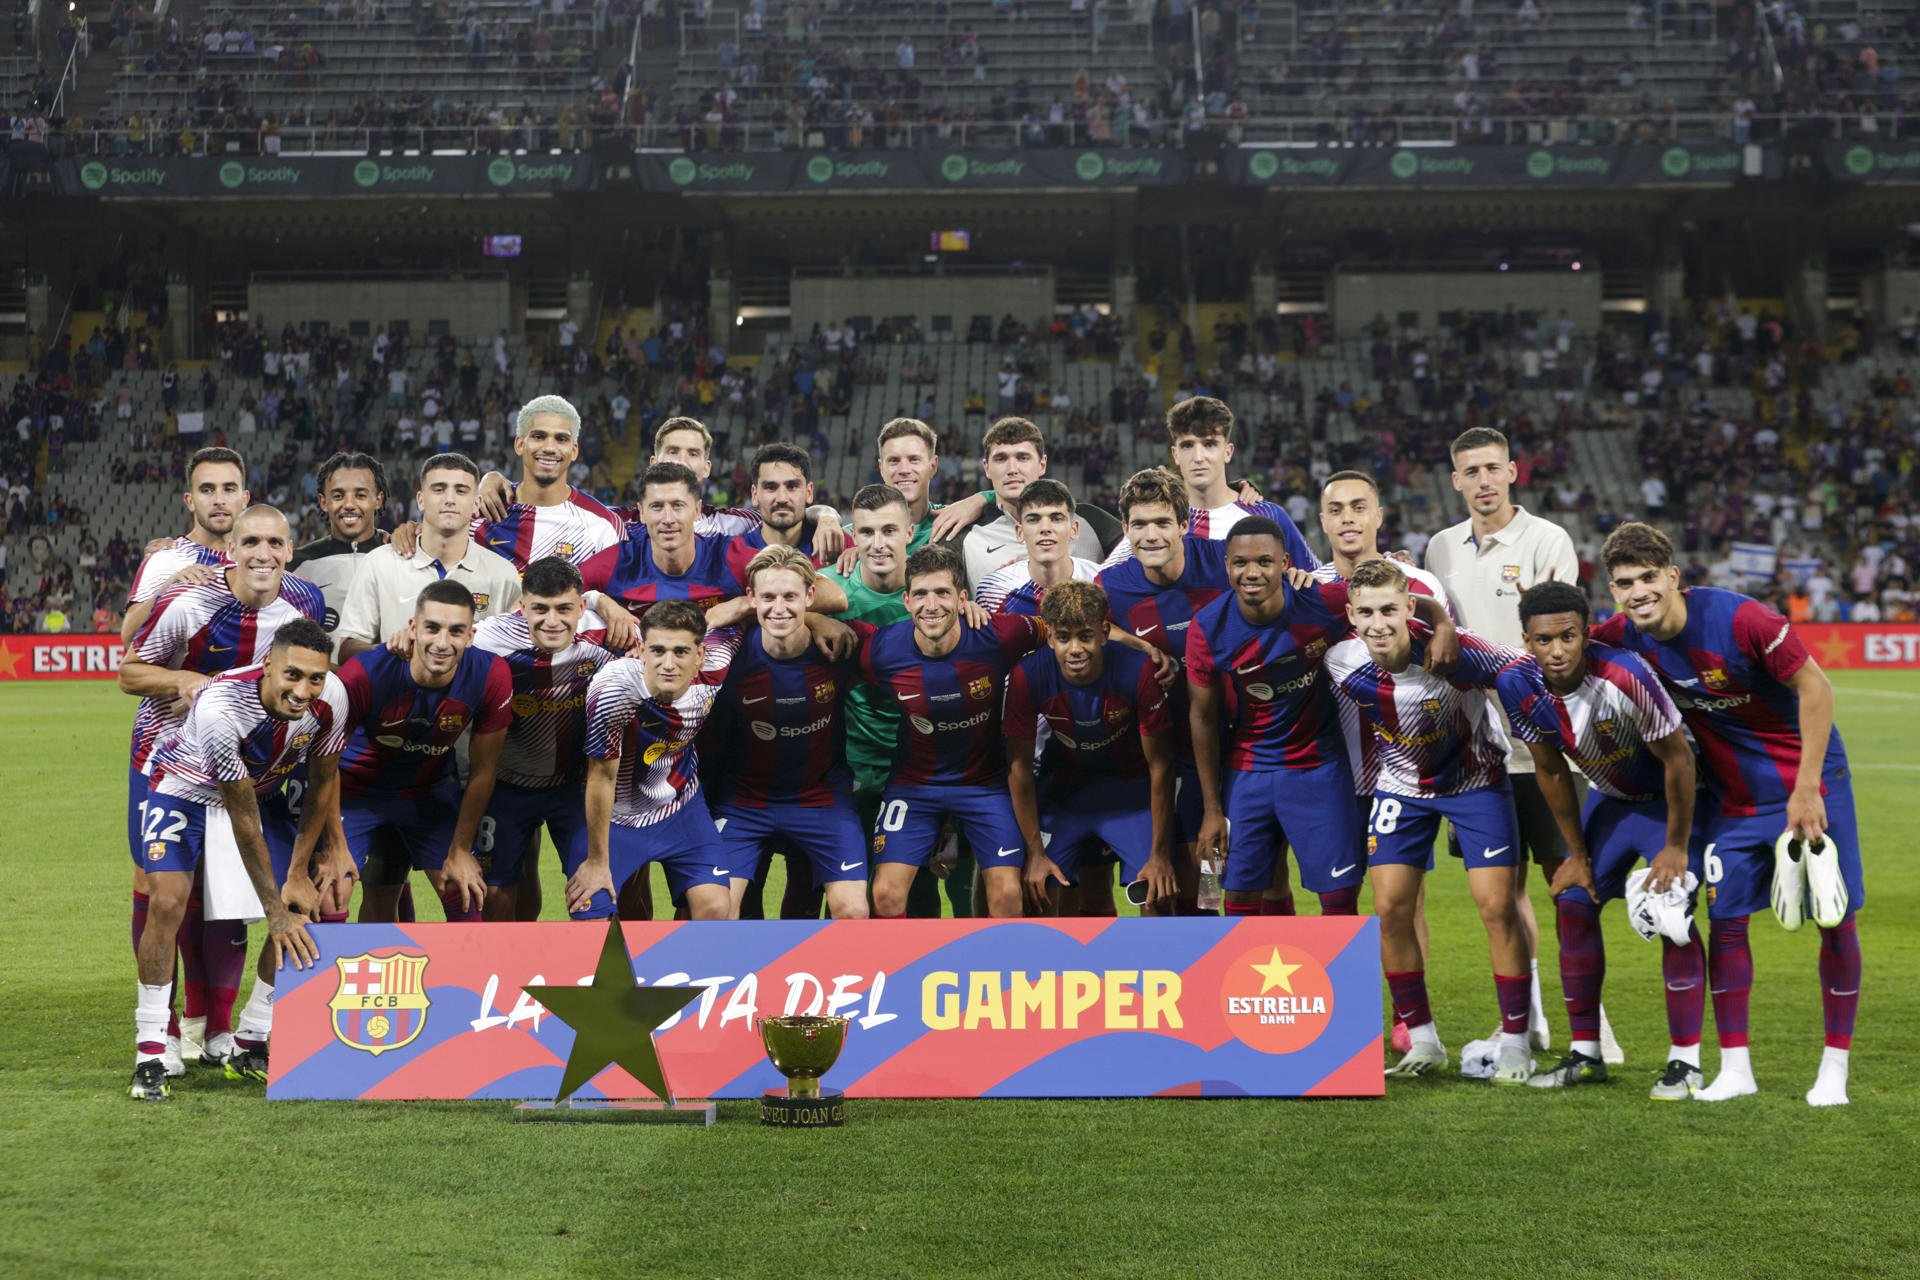 El Barça arrenca l’era de Montjuïc amb títol al Gamper contra el Tottenham (4-2)